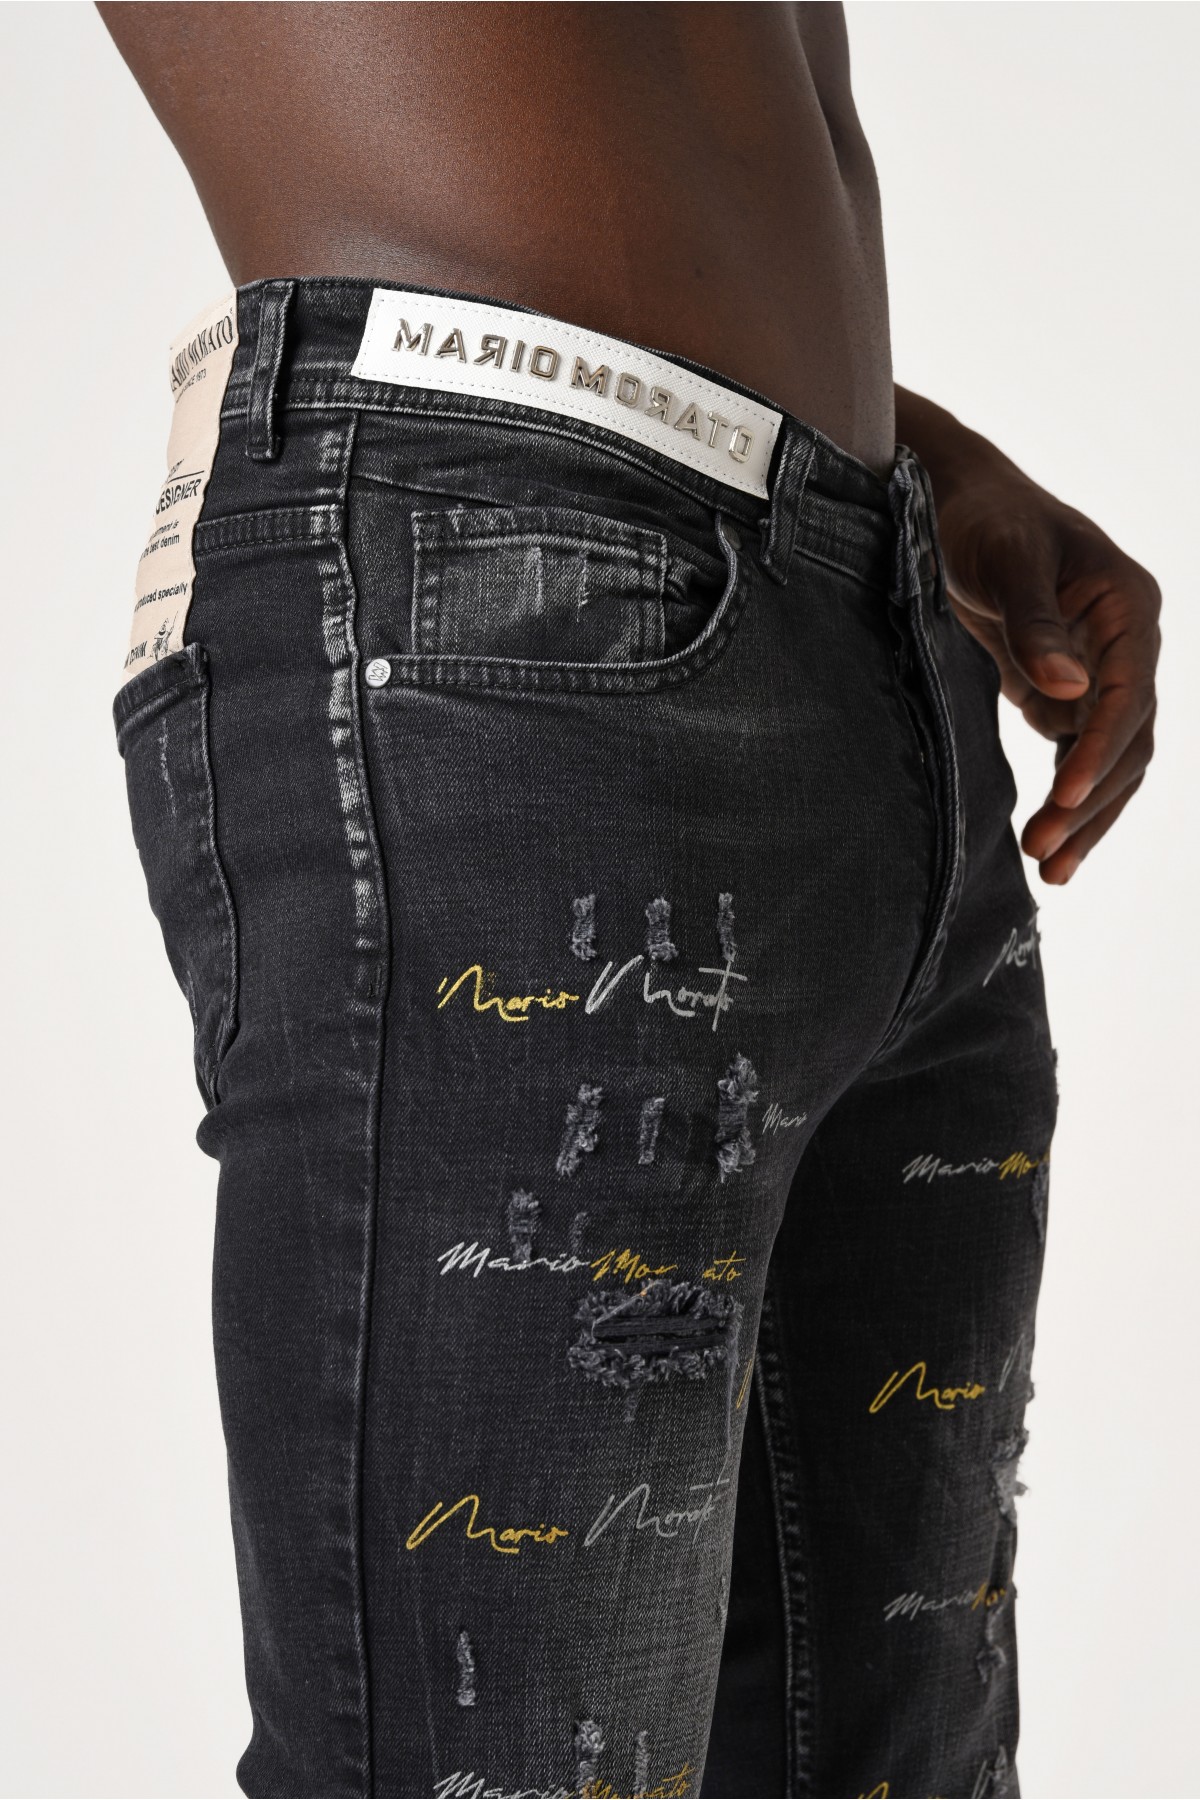 Erkek Denim Pantolon - Kemerde Gümüş Morato detaylı Paçalarda renkli baskılı - Koyu Gri